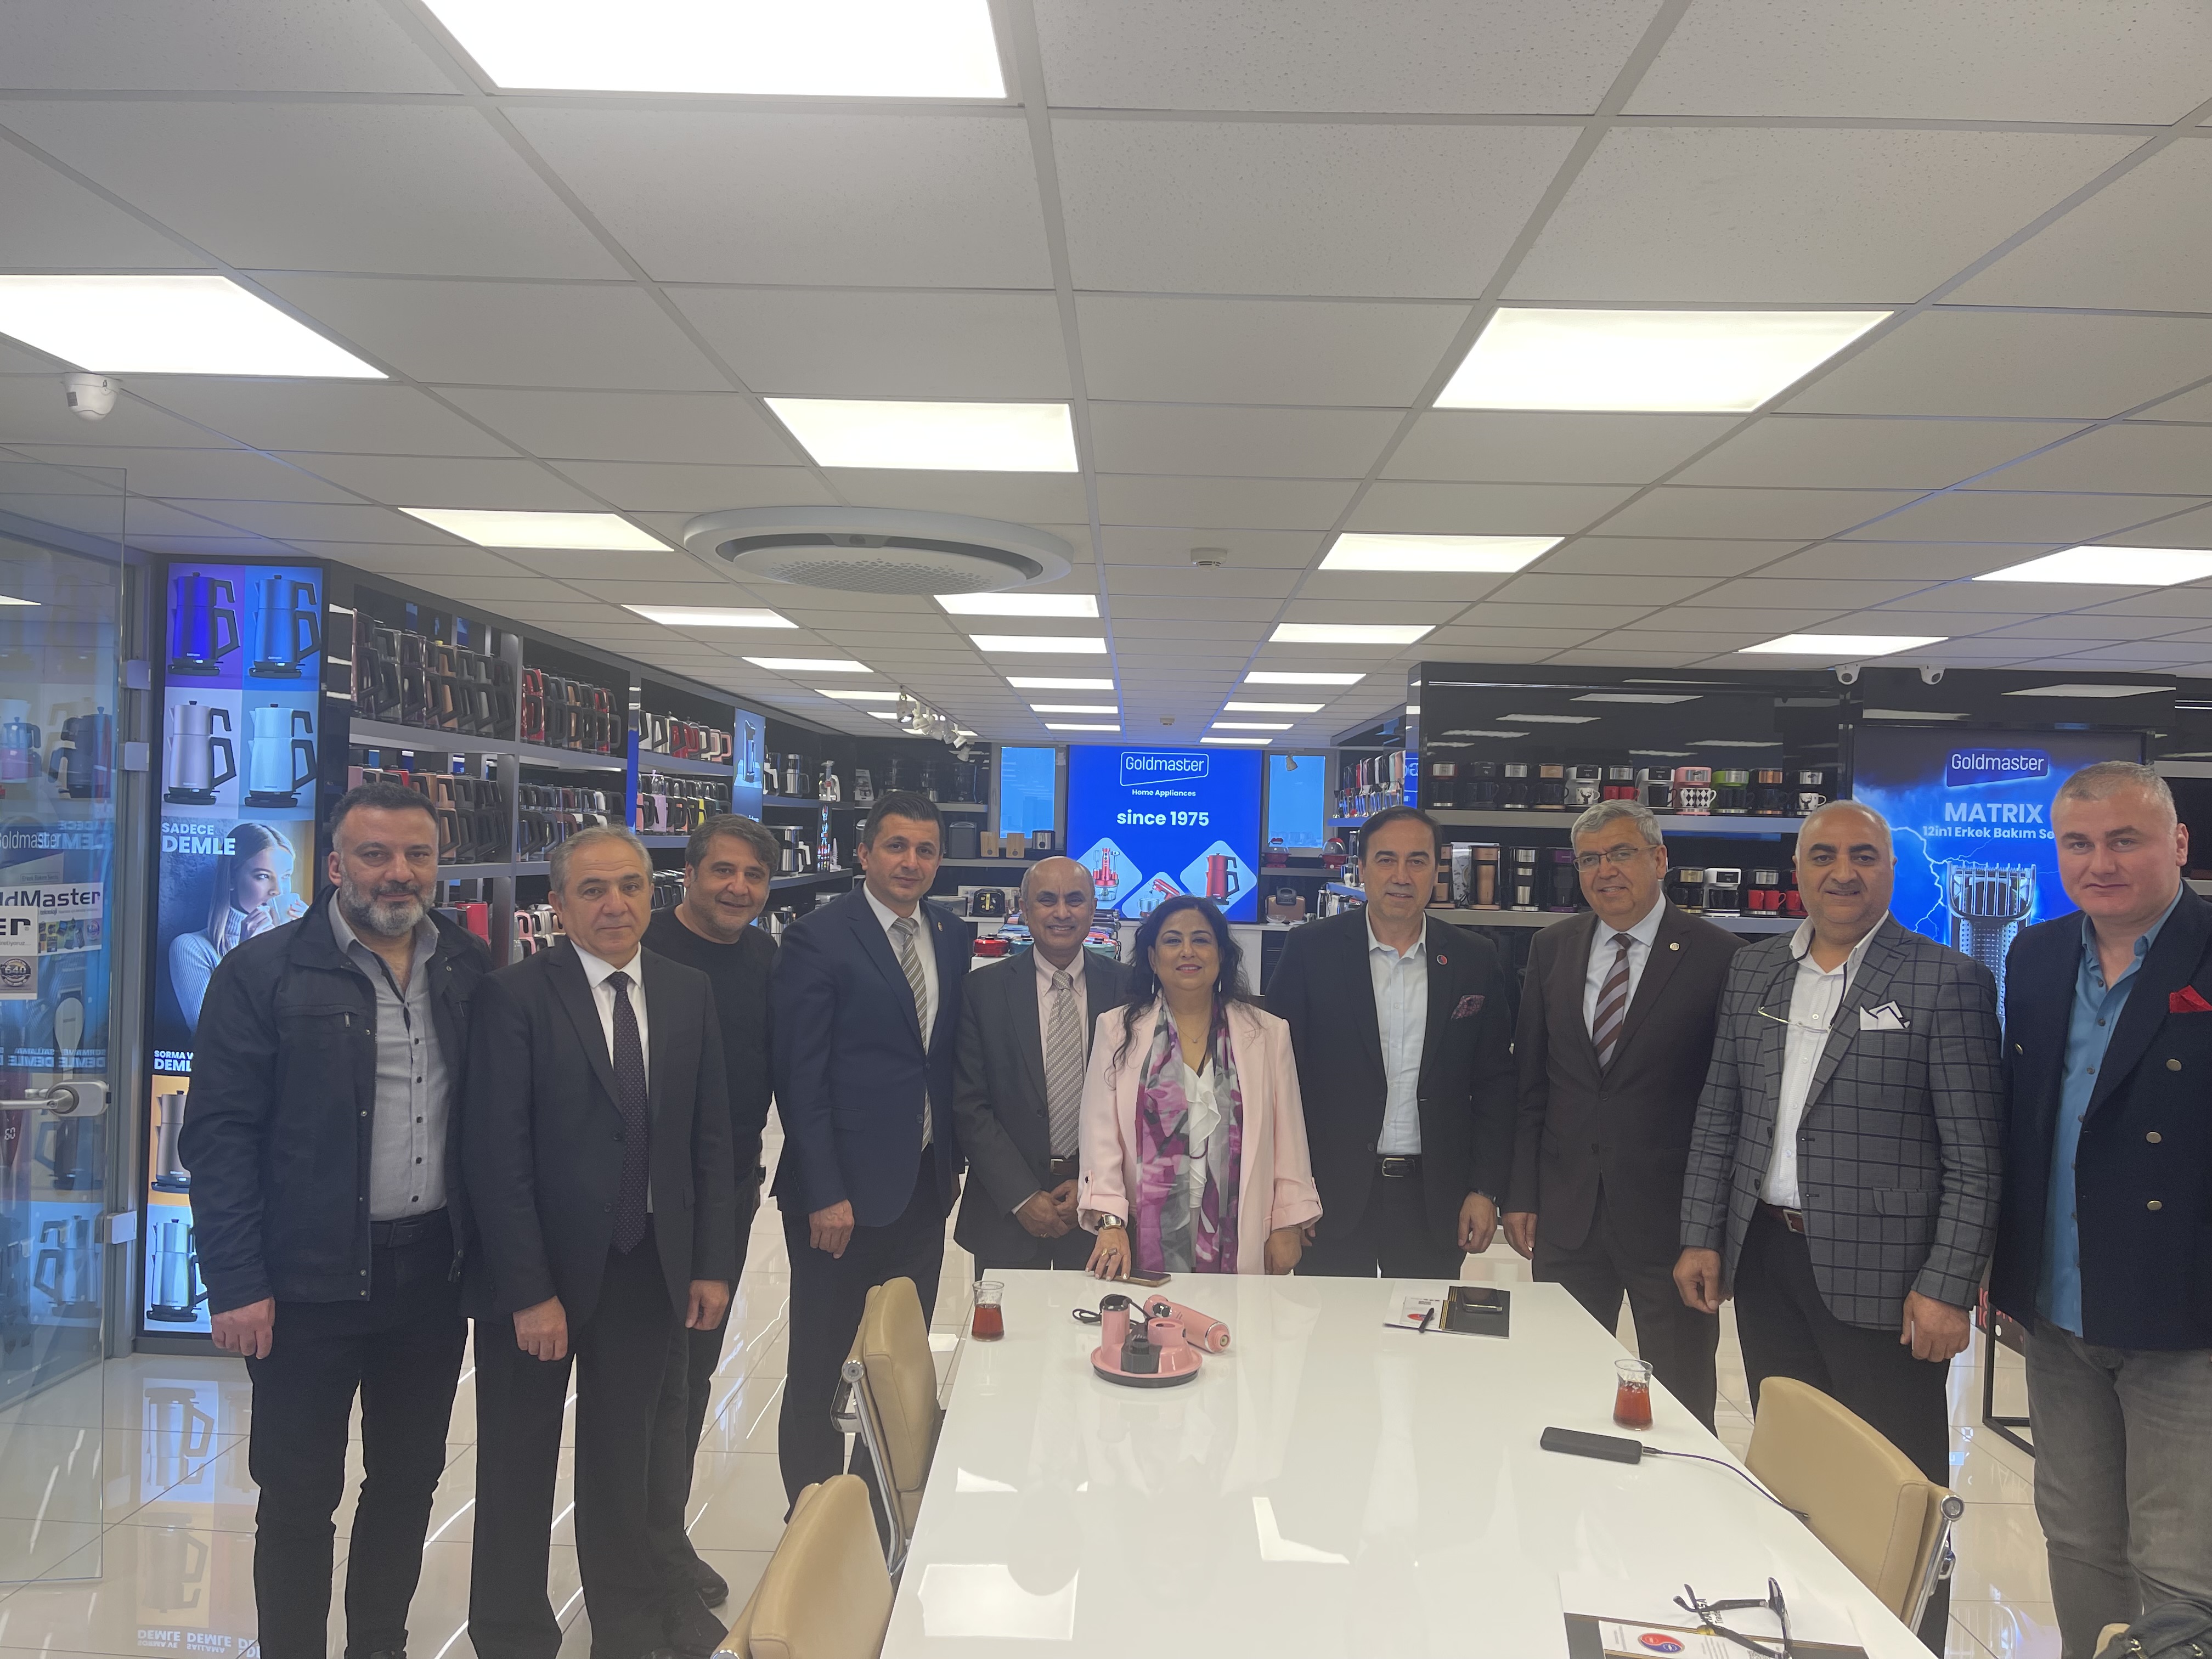 ATİK İstanbul, ATİK Kanada ve ATİK Hindistan Yönetim Kurulu Üyeleri İstanbul’da Uluslararası Ticaret İşbirliği Görüşmelerinde Bulundular.